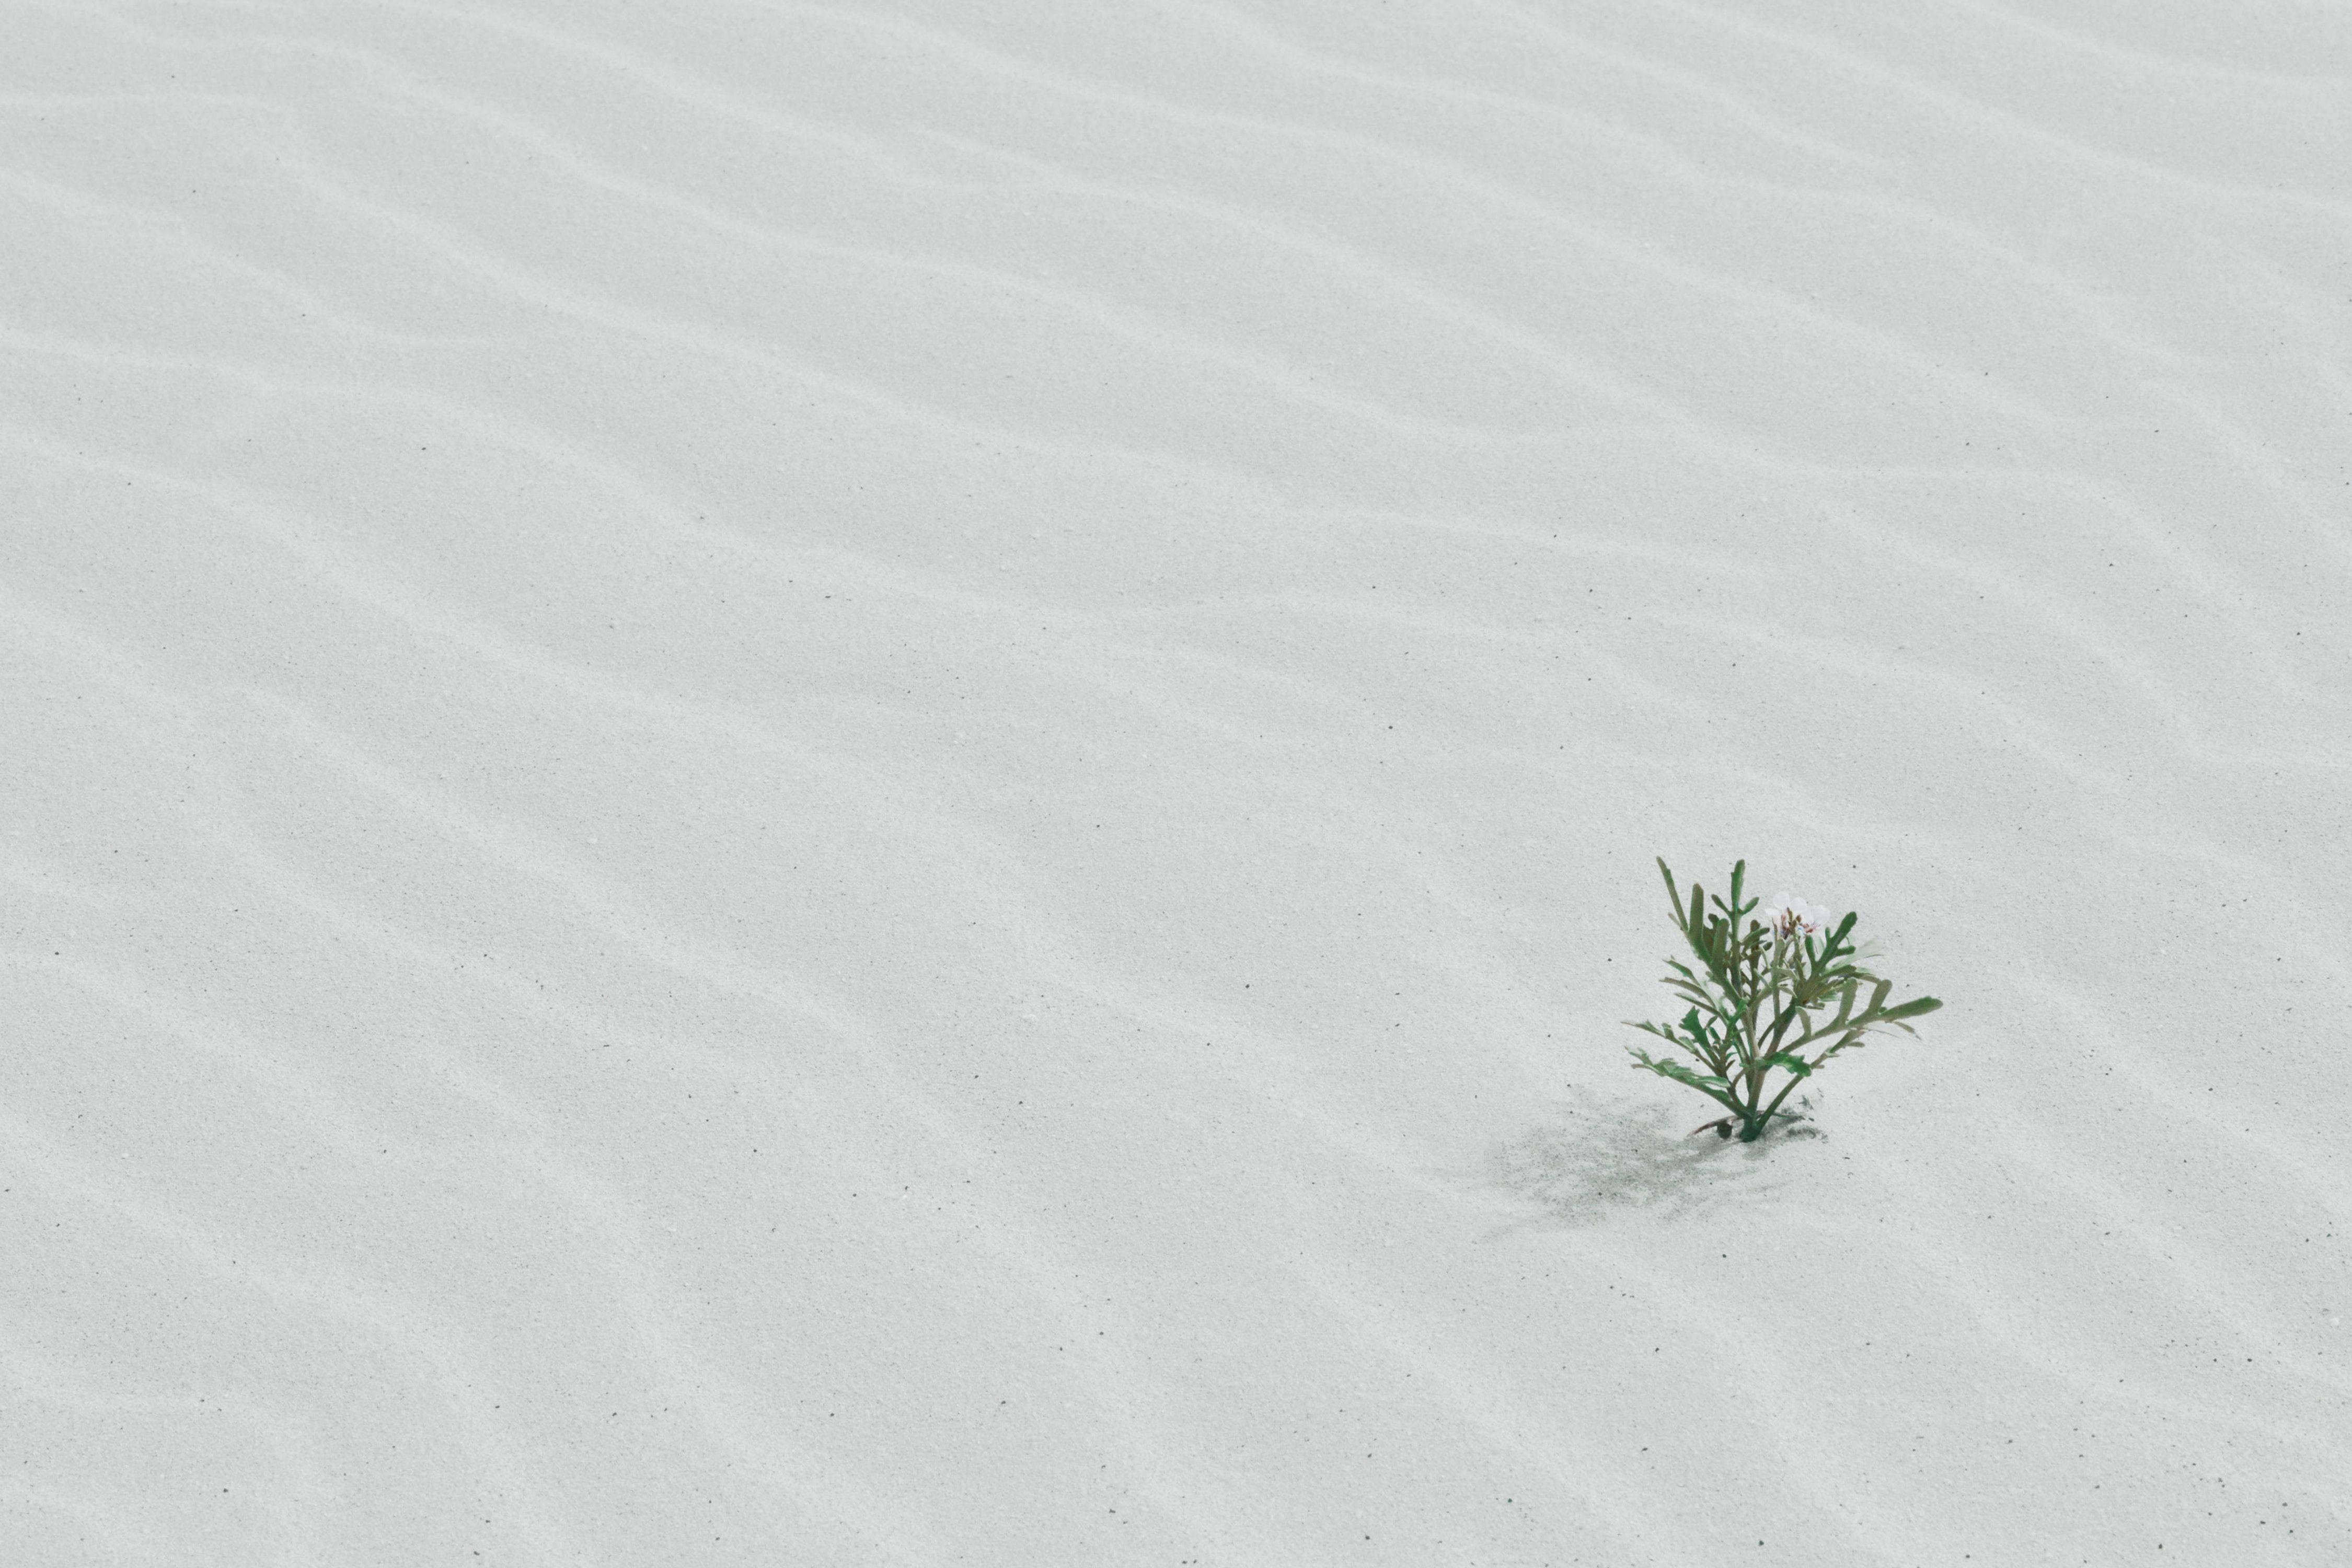 A plant grows through white sand